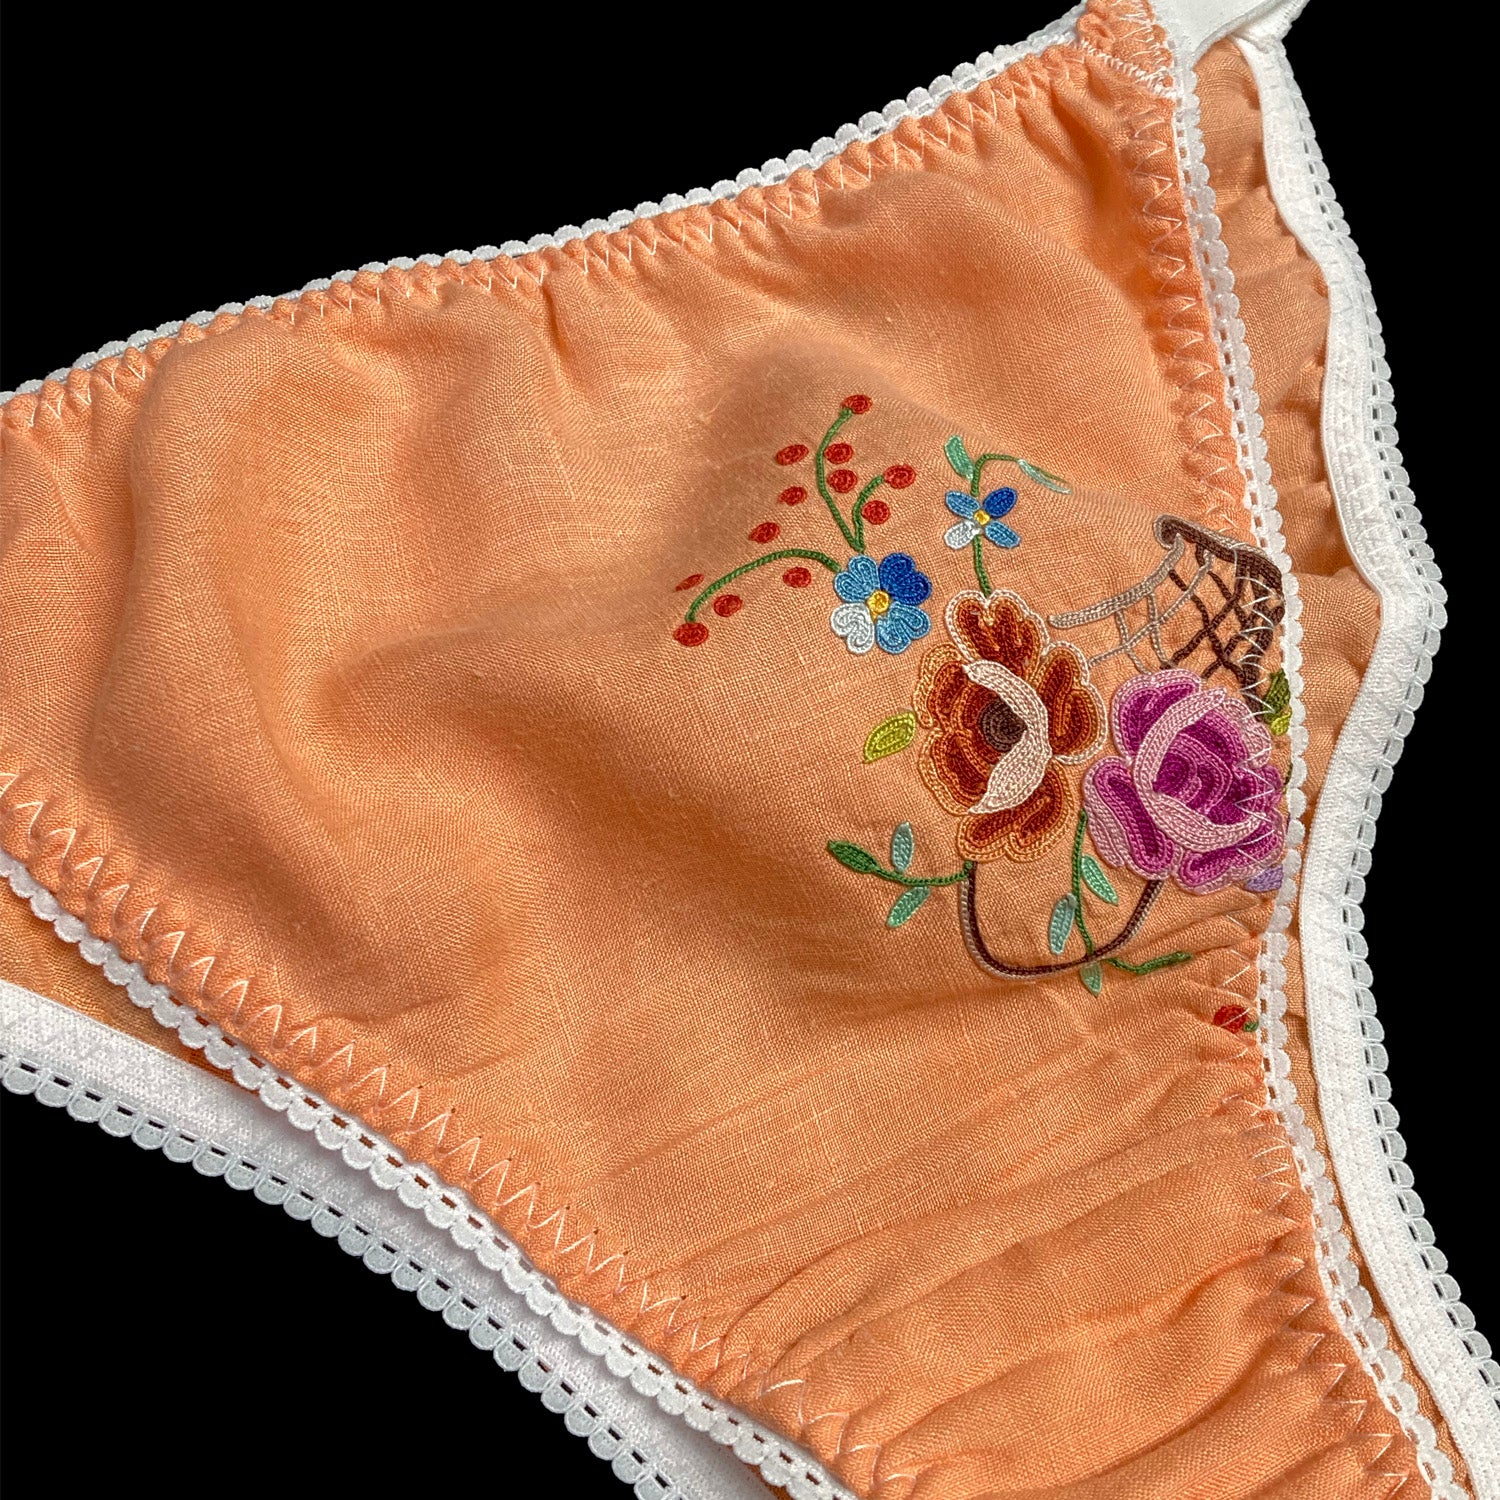 Sexy Panties - Size 38